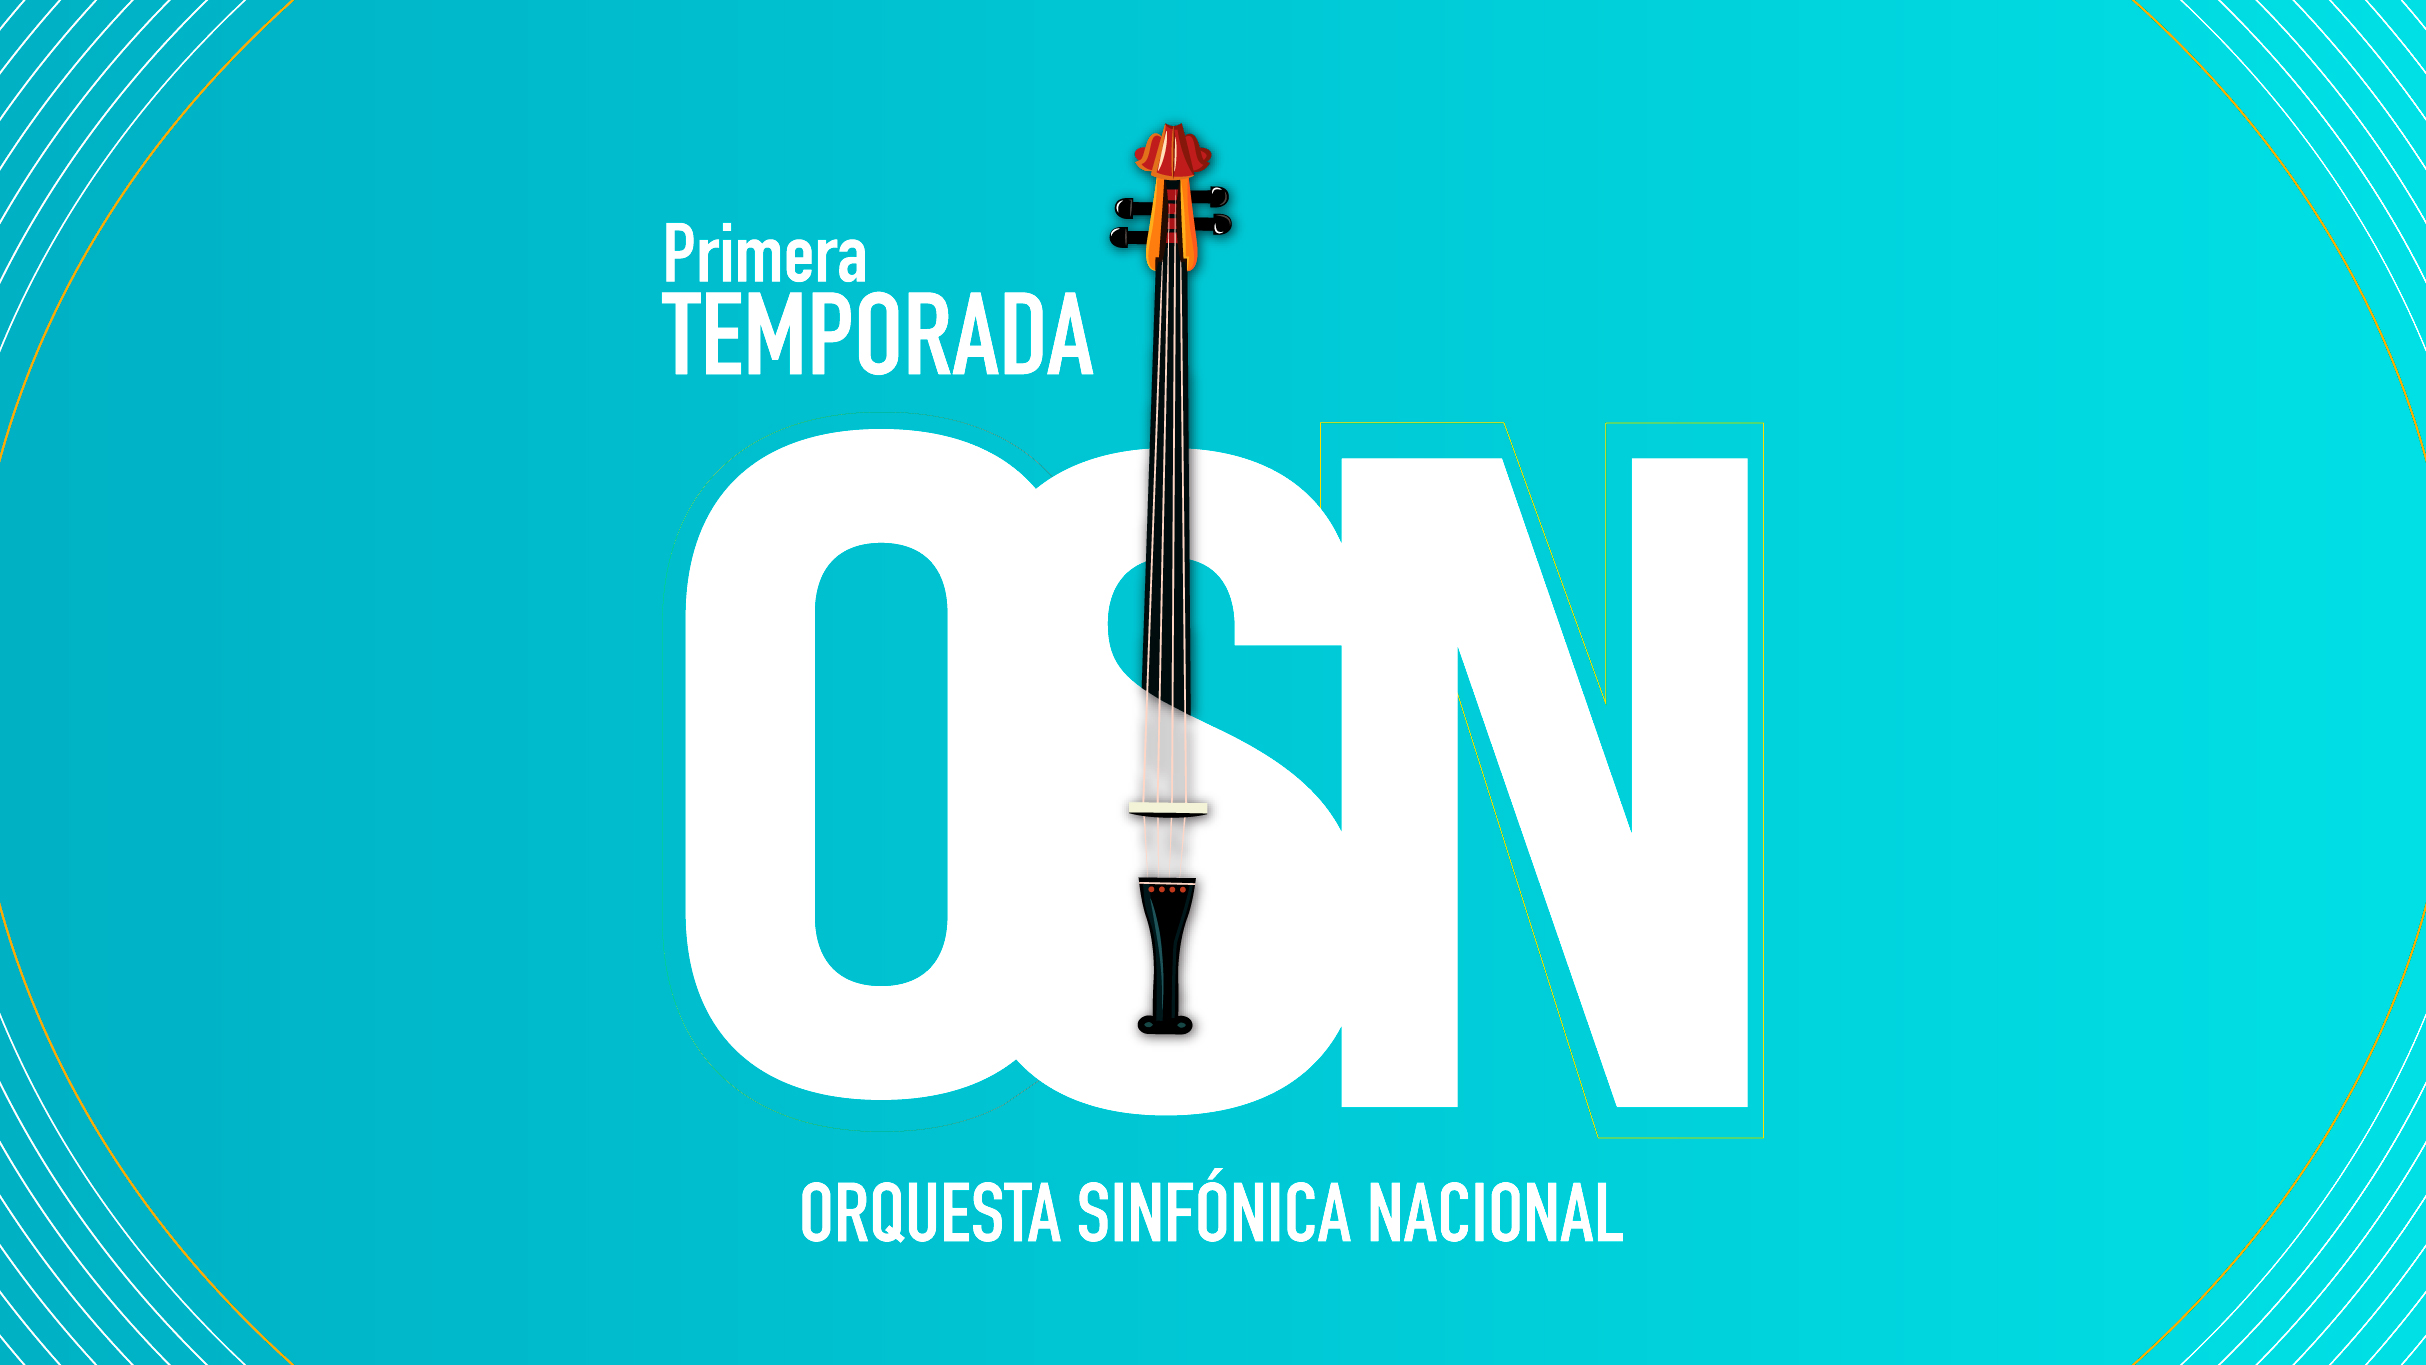 Orq. Sinfónica Nacional El ideal sinfónico de Beethoven